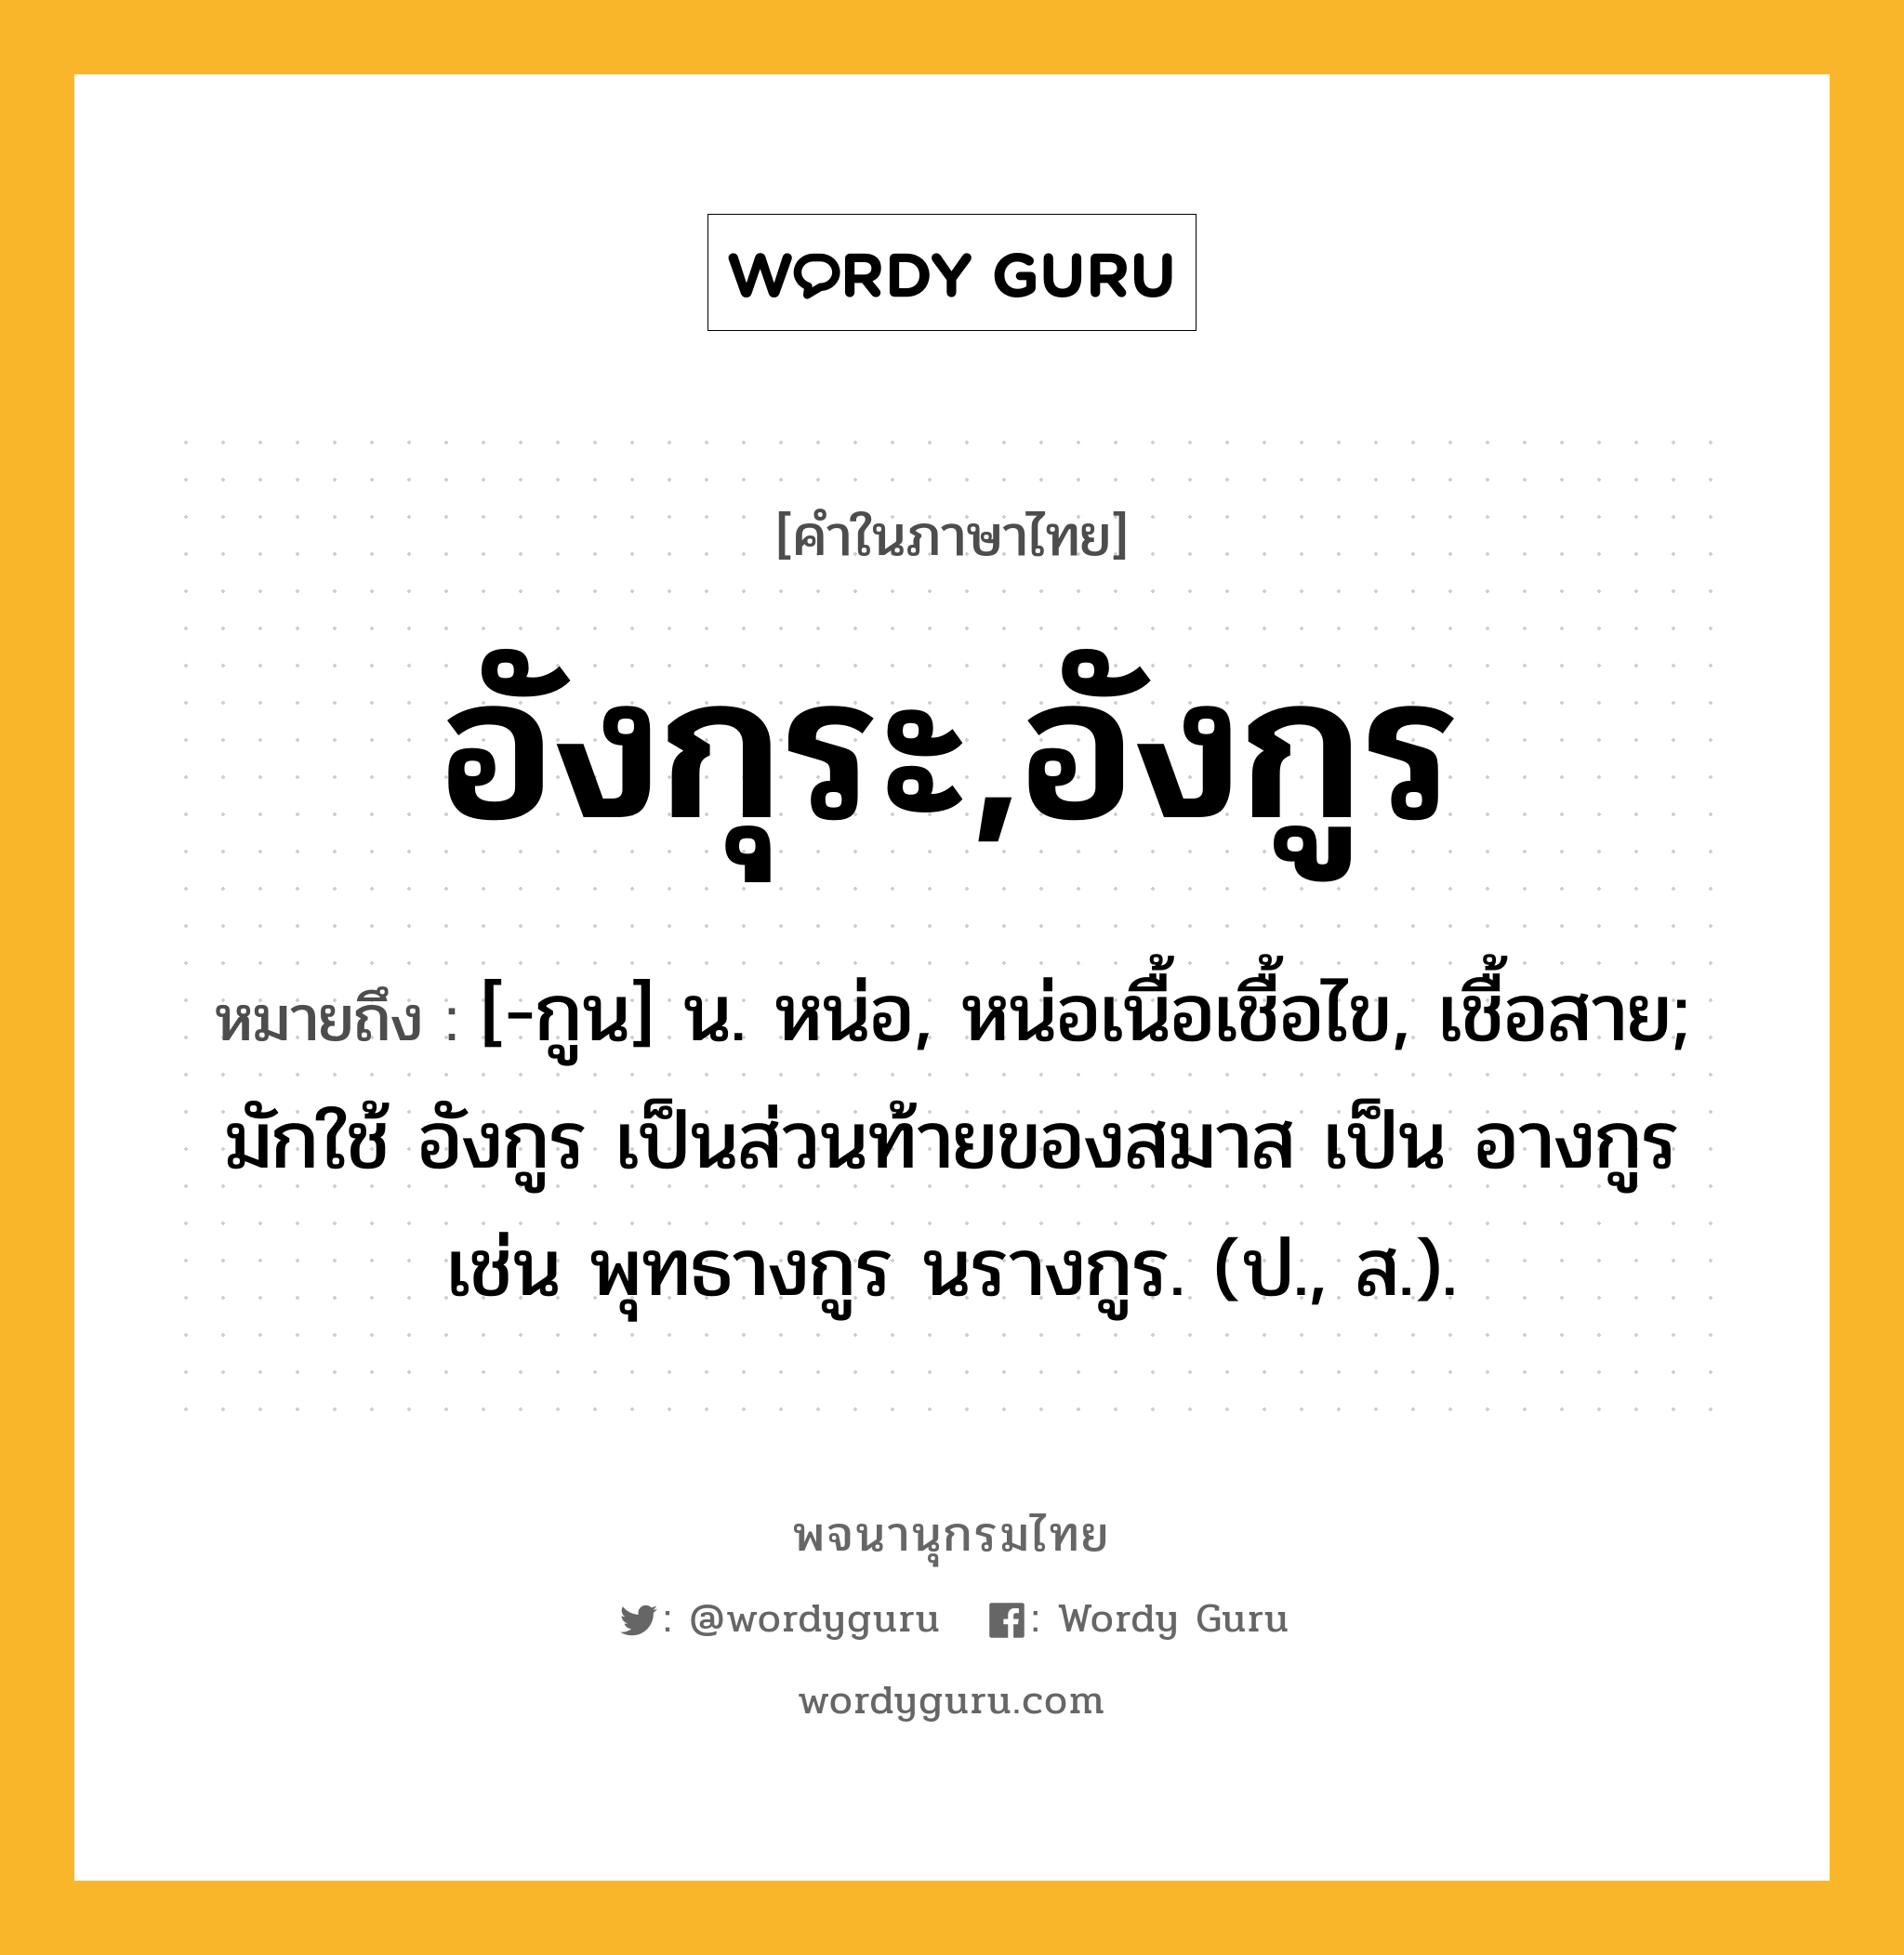 อังกุระ,อังกูร หมายถึงอะไร?, คำในภาษาไทย อังกุระ,อังกูร หมายถึง [-กูน] น. หน่อ, หน่อเนื้อเชื้อไข, เชื้อสาย; มักใช้ อังกูร เป็นส่วนท้ายของสมาส เป็น อางกูร เช่น พุทธางกูร นรางกูร. (ป., ส.).